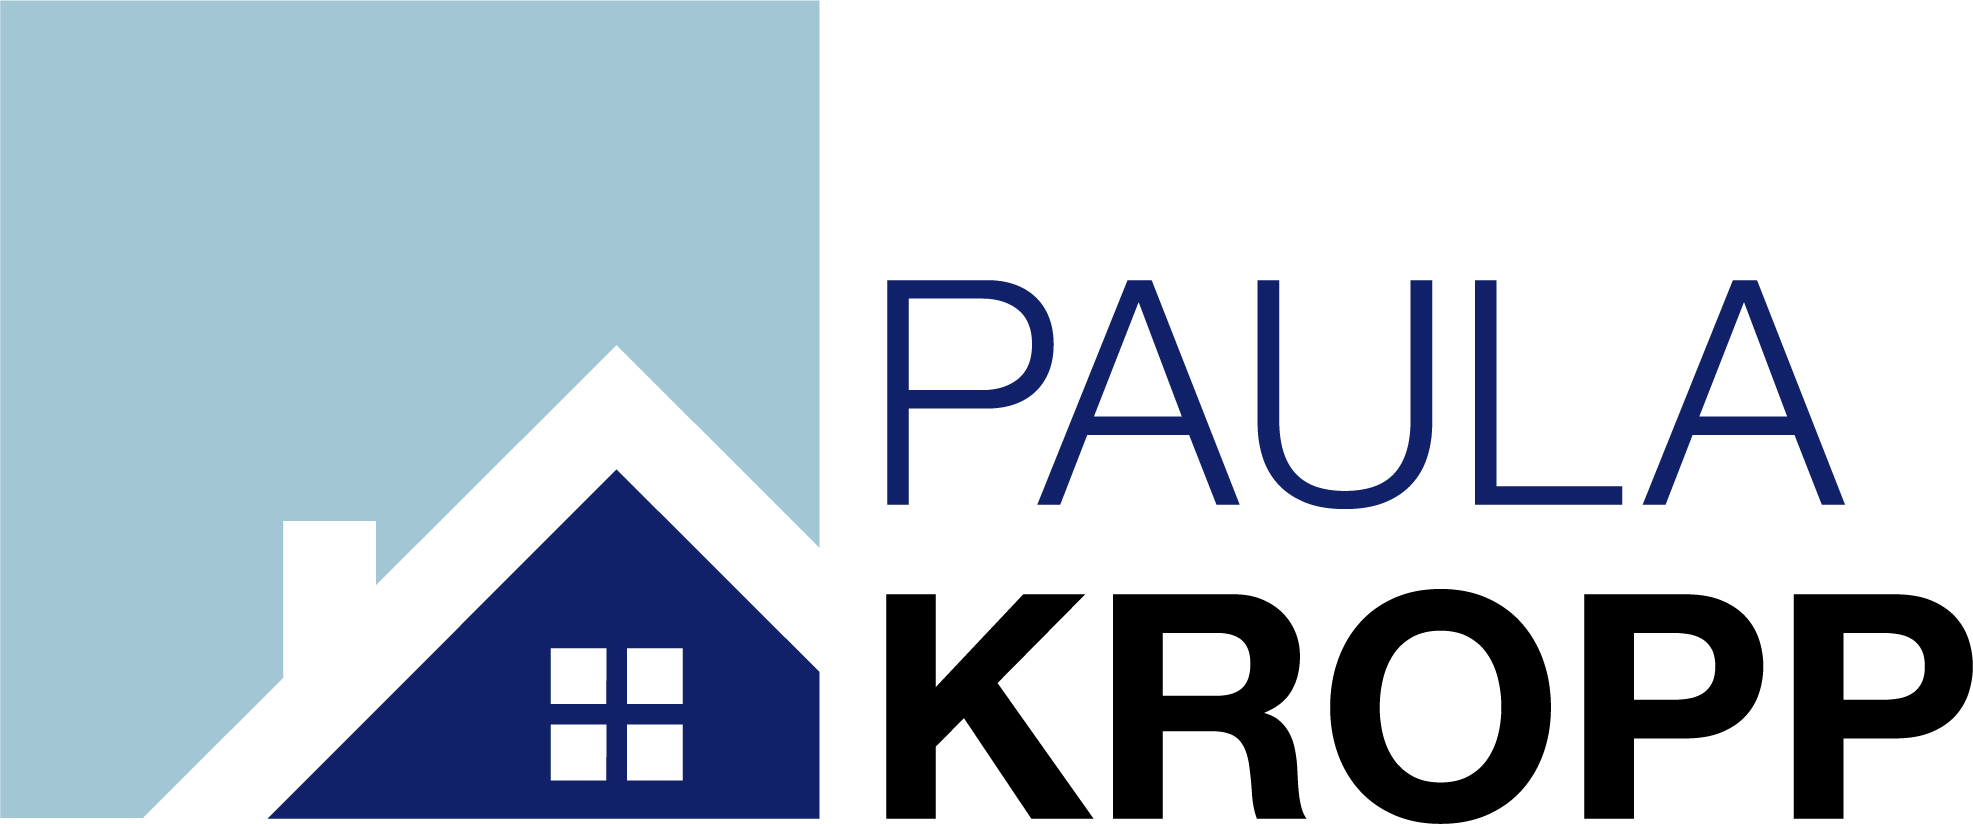 Paula Kropp Homes